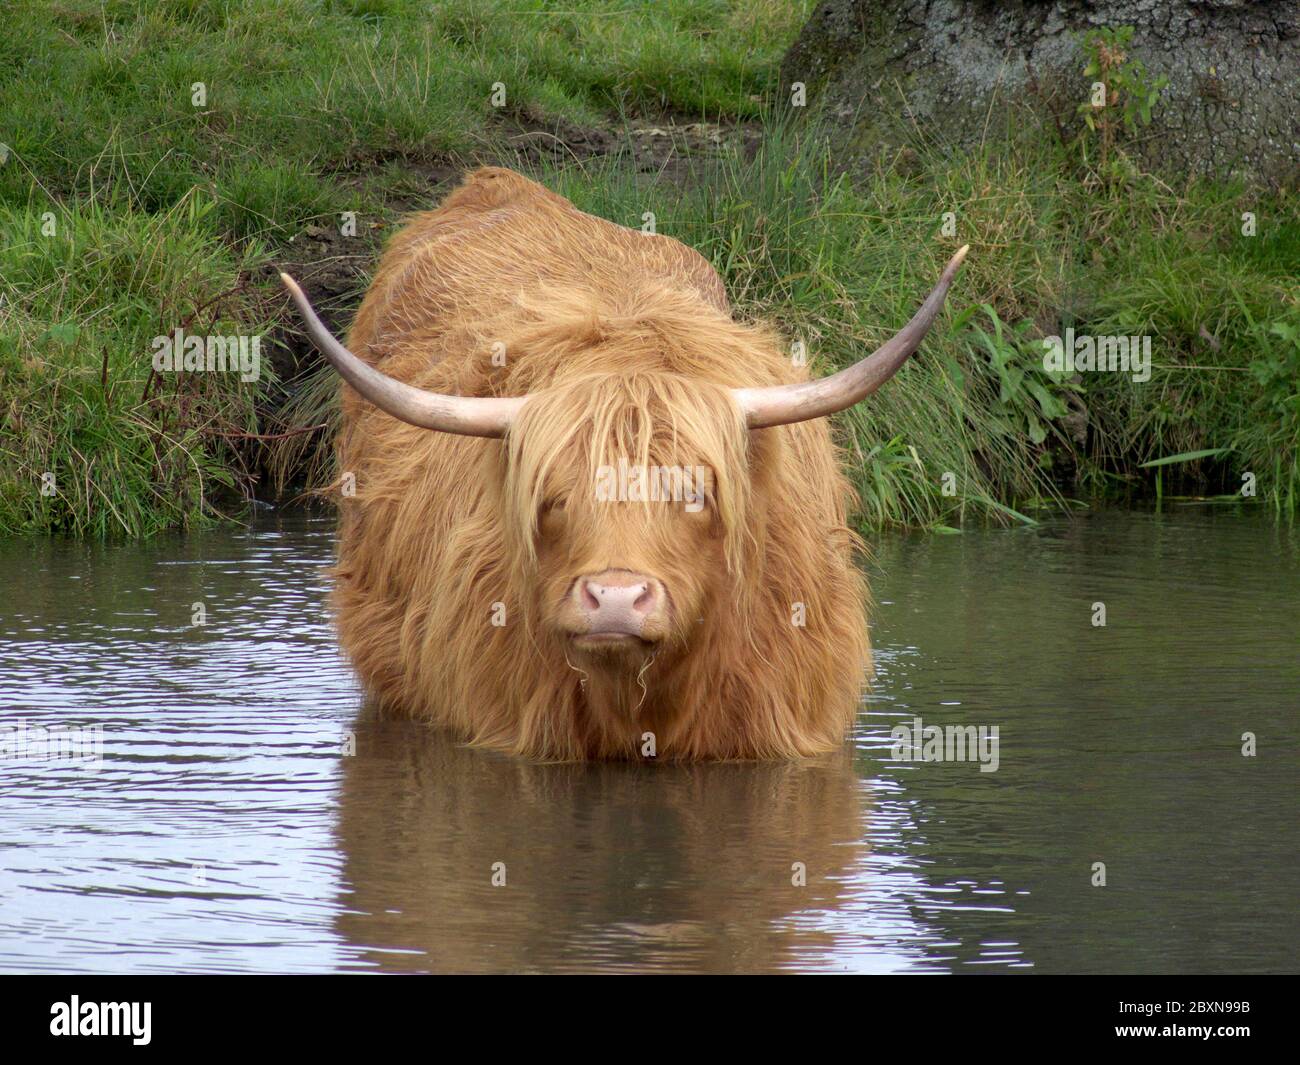 La vache de bétail des Highlands prend un bain pour se rafraîchir dans la rivière Wey près de Guildford, Surrey, Angleterre. Le troupeau se broute sur les rives de la rivière tout l'été lo Banque D'Images